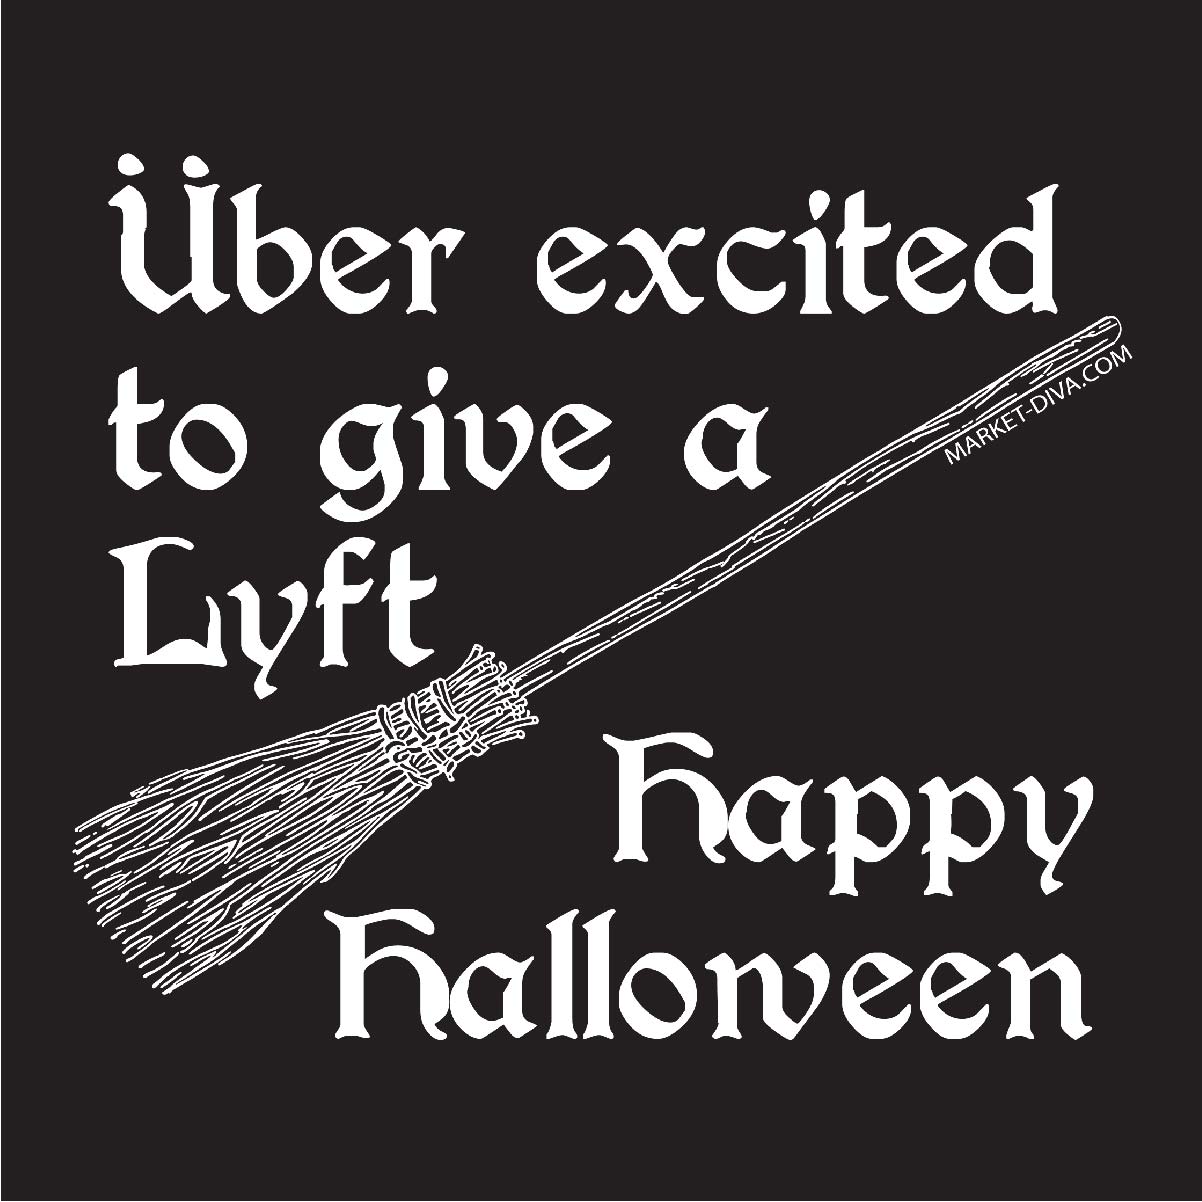 Halloween: Uber Lyft T-Shirt